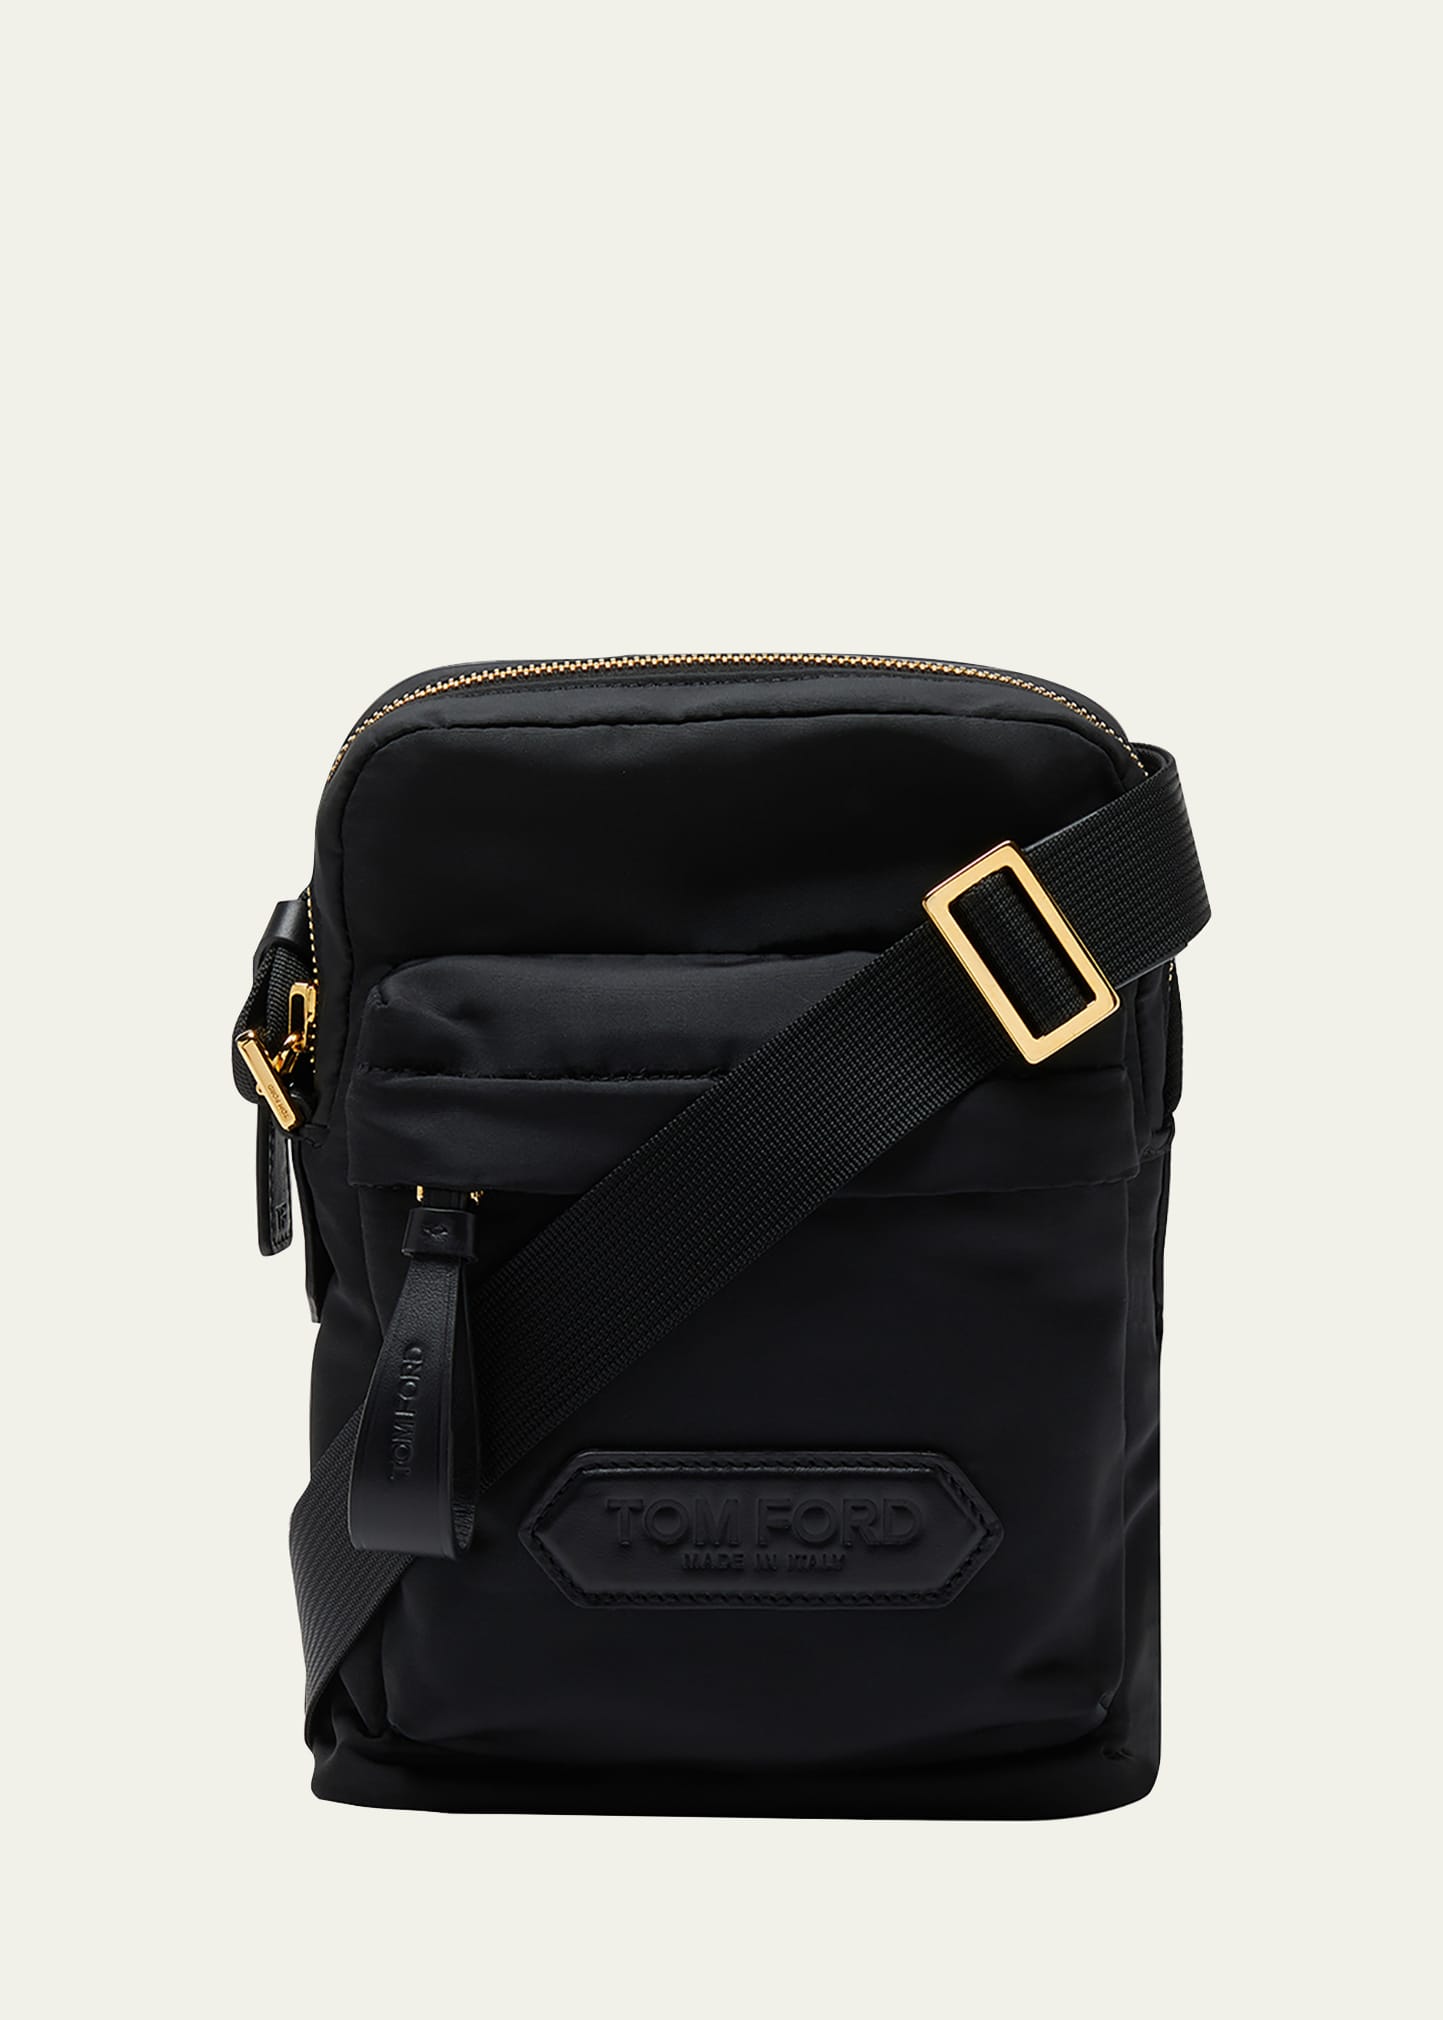 Tom Ford Mini Messenger Bag With Adjustable Strap In 1n001 Black